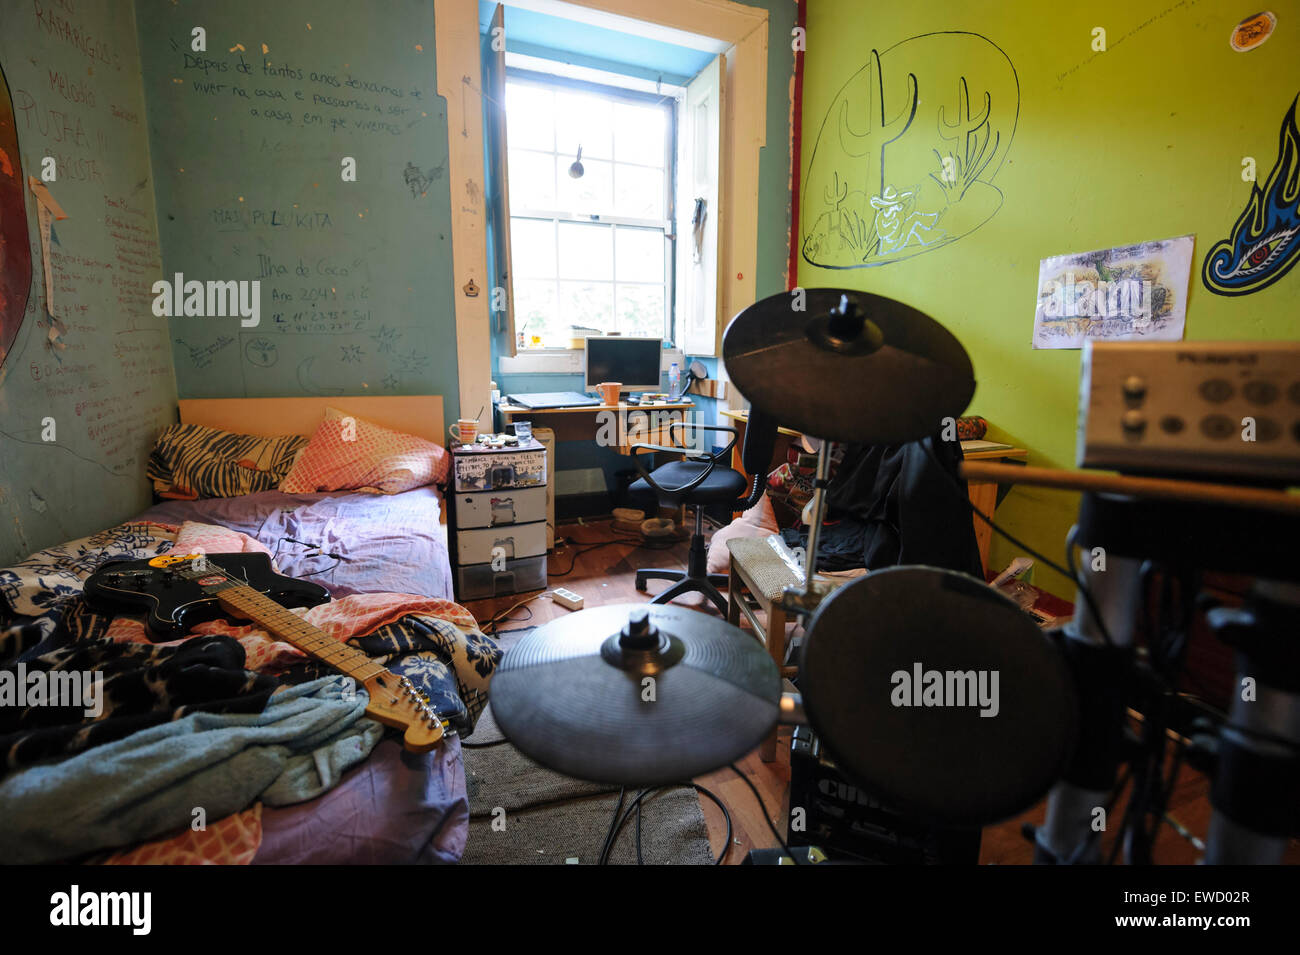 Kleine schmutzige Teenager Schlafzimmer mit elektronischem Schlagzeug und Gitarre auf dem ungemachten Bett Stockfoto